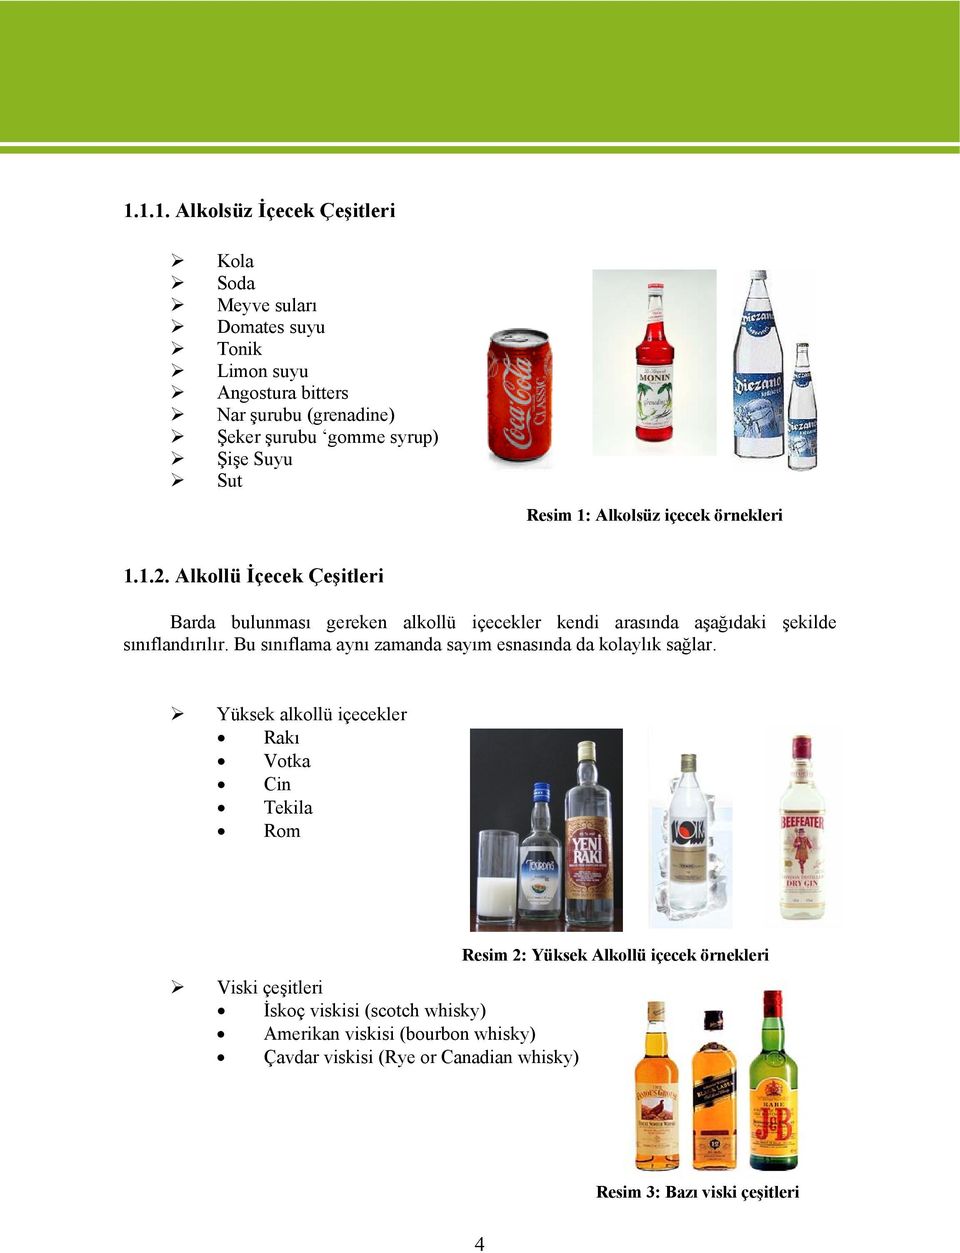 Alkollü İçecek Çeşitleri Barda bulunması gereken alkollü içecekler kendi arasında aşağıdaki şekilde sınıflandırılır.